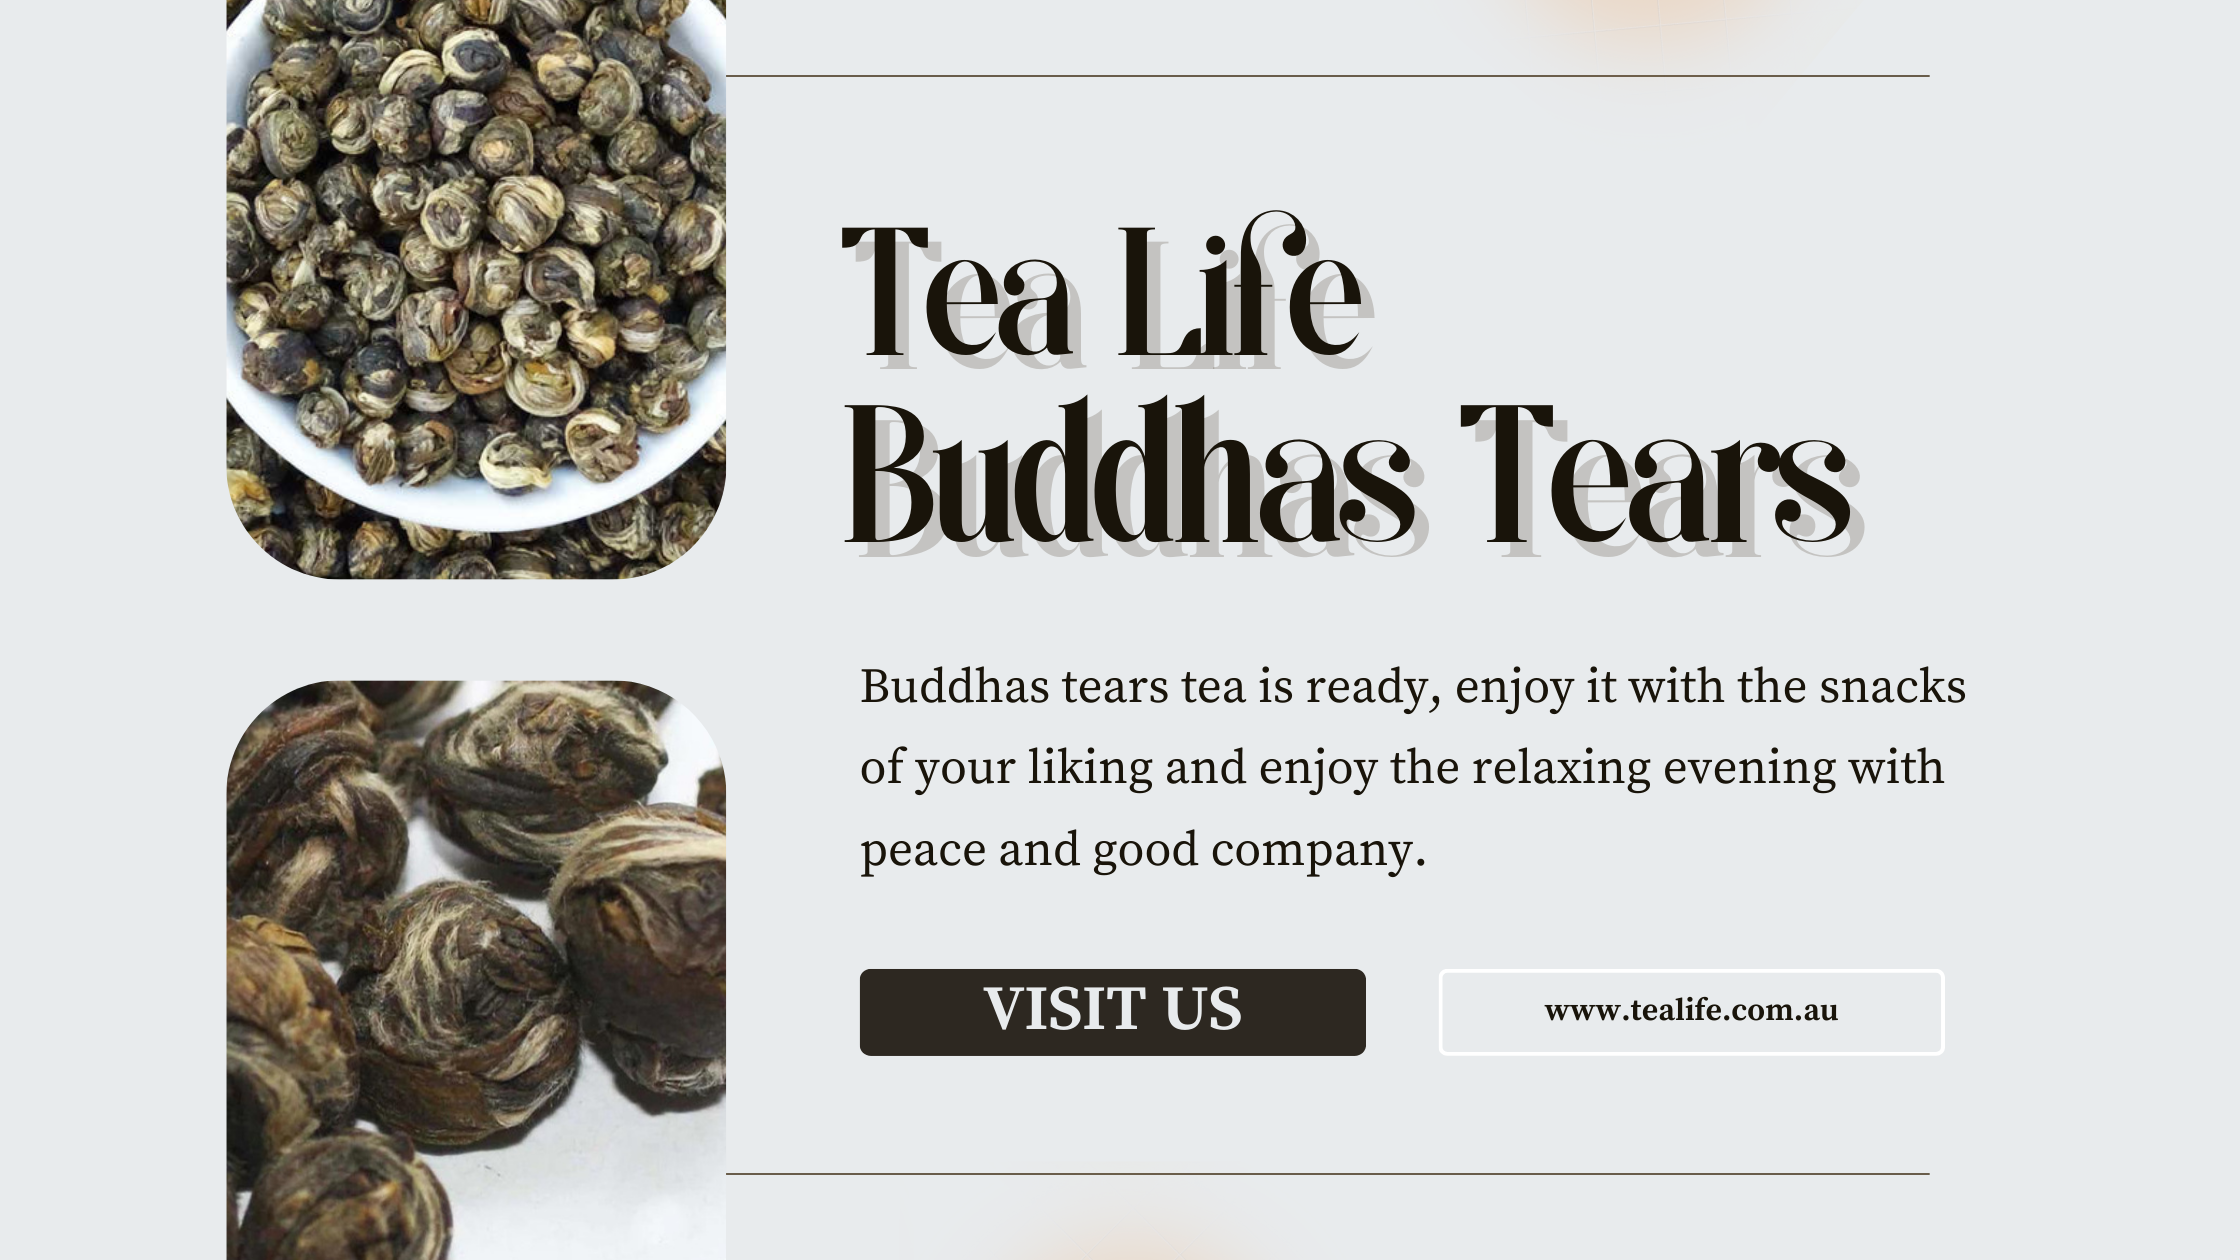 Buddhas tears tea